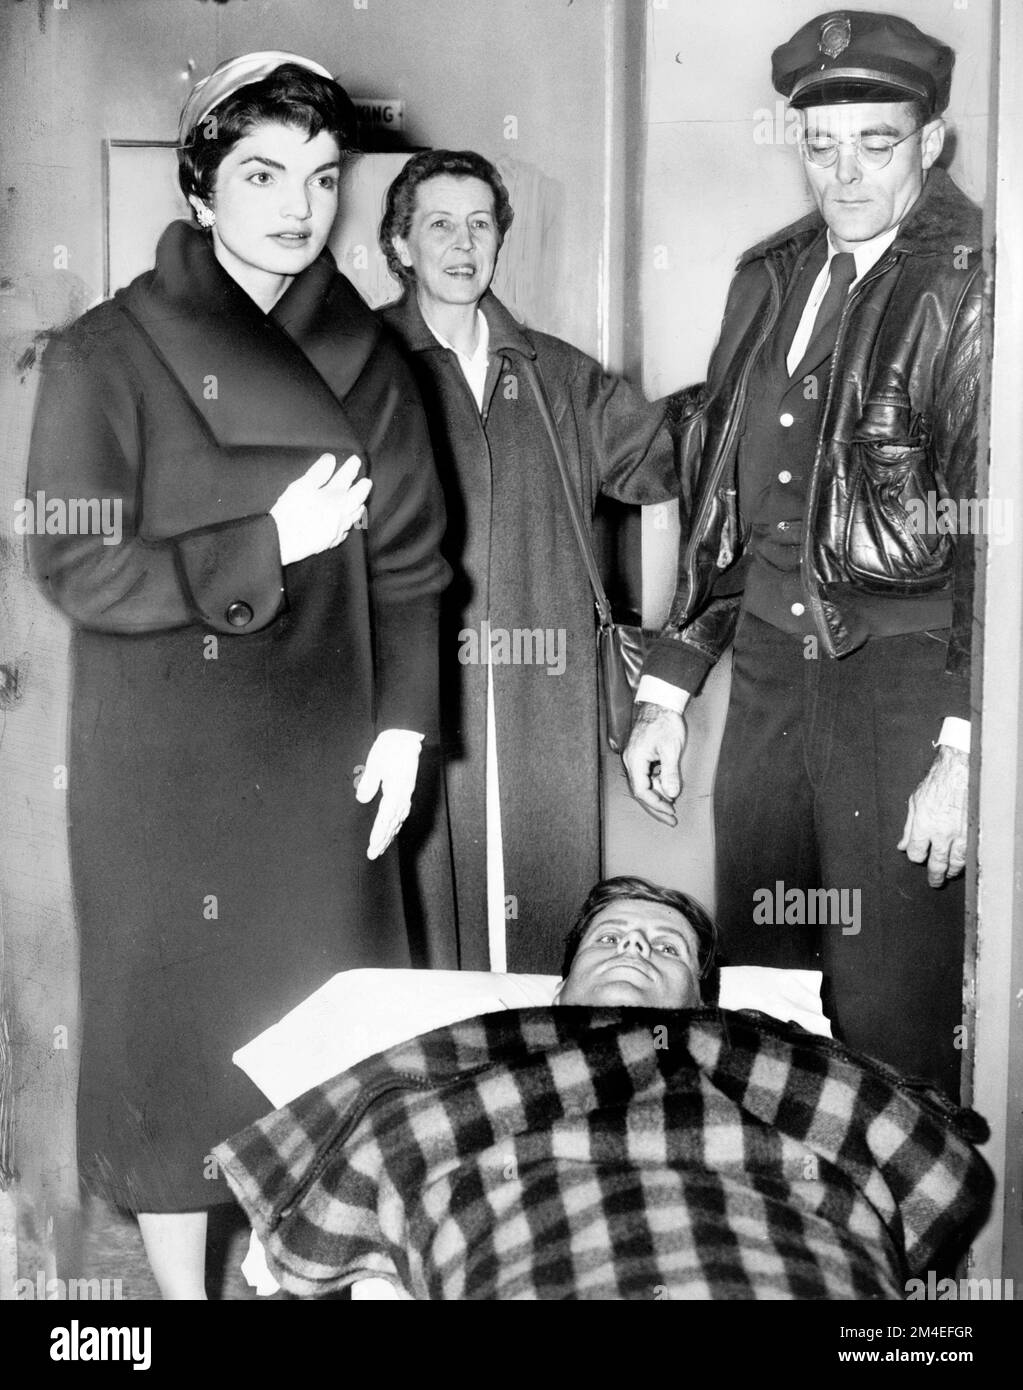 Les Kennedys après la chirurgie de la colonne vertébrale de John, décembre 1954 Banque D'Images